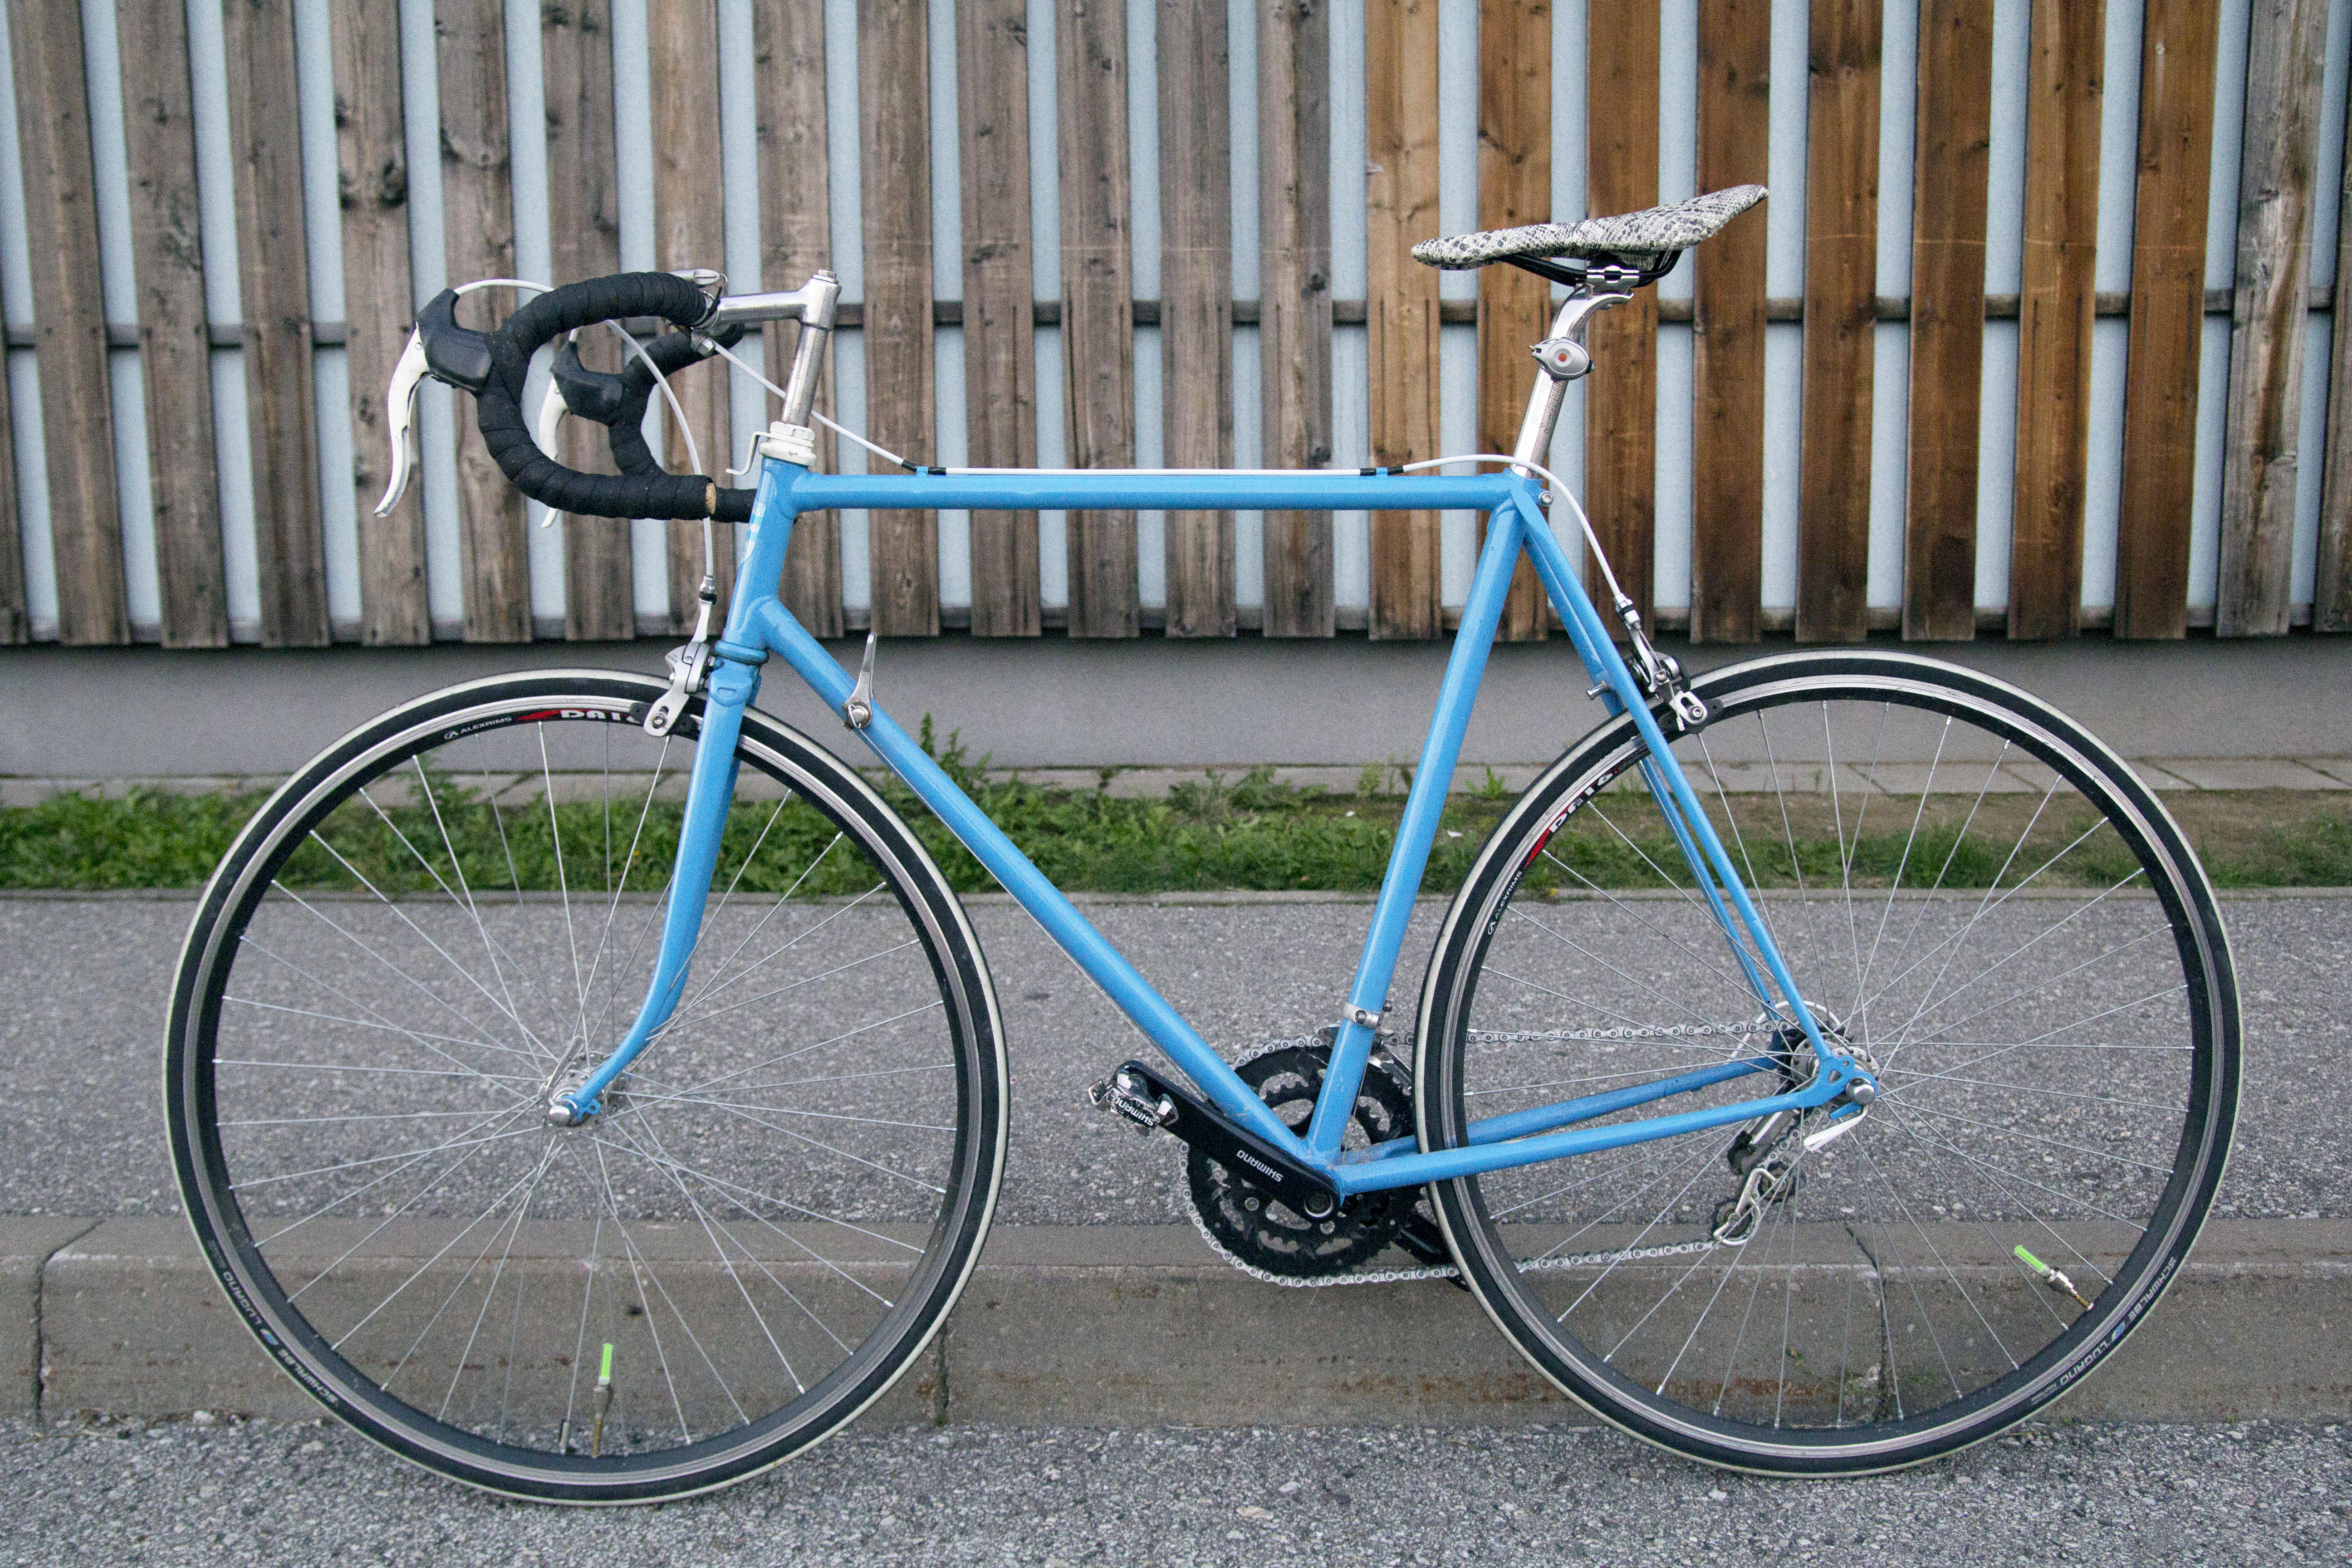 restored road bike